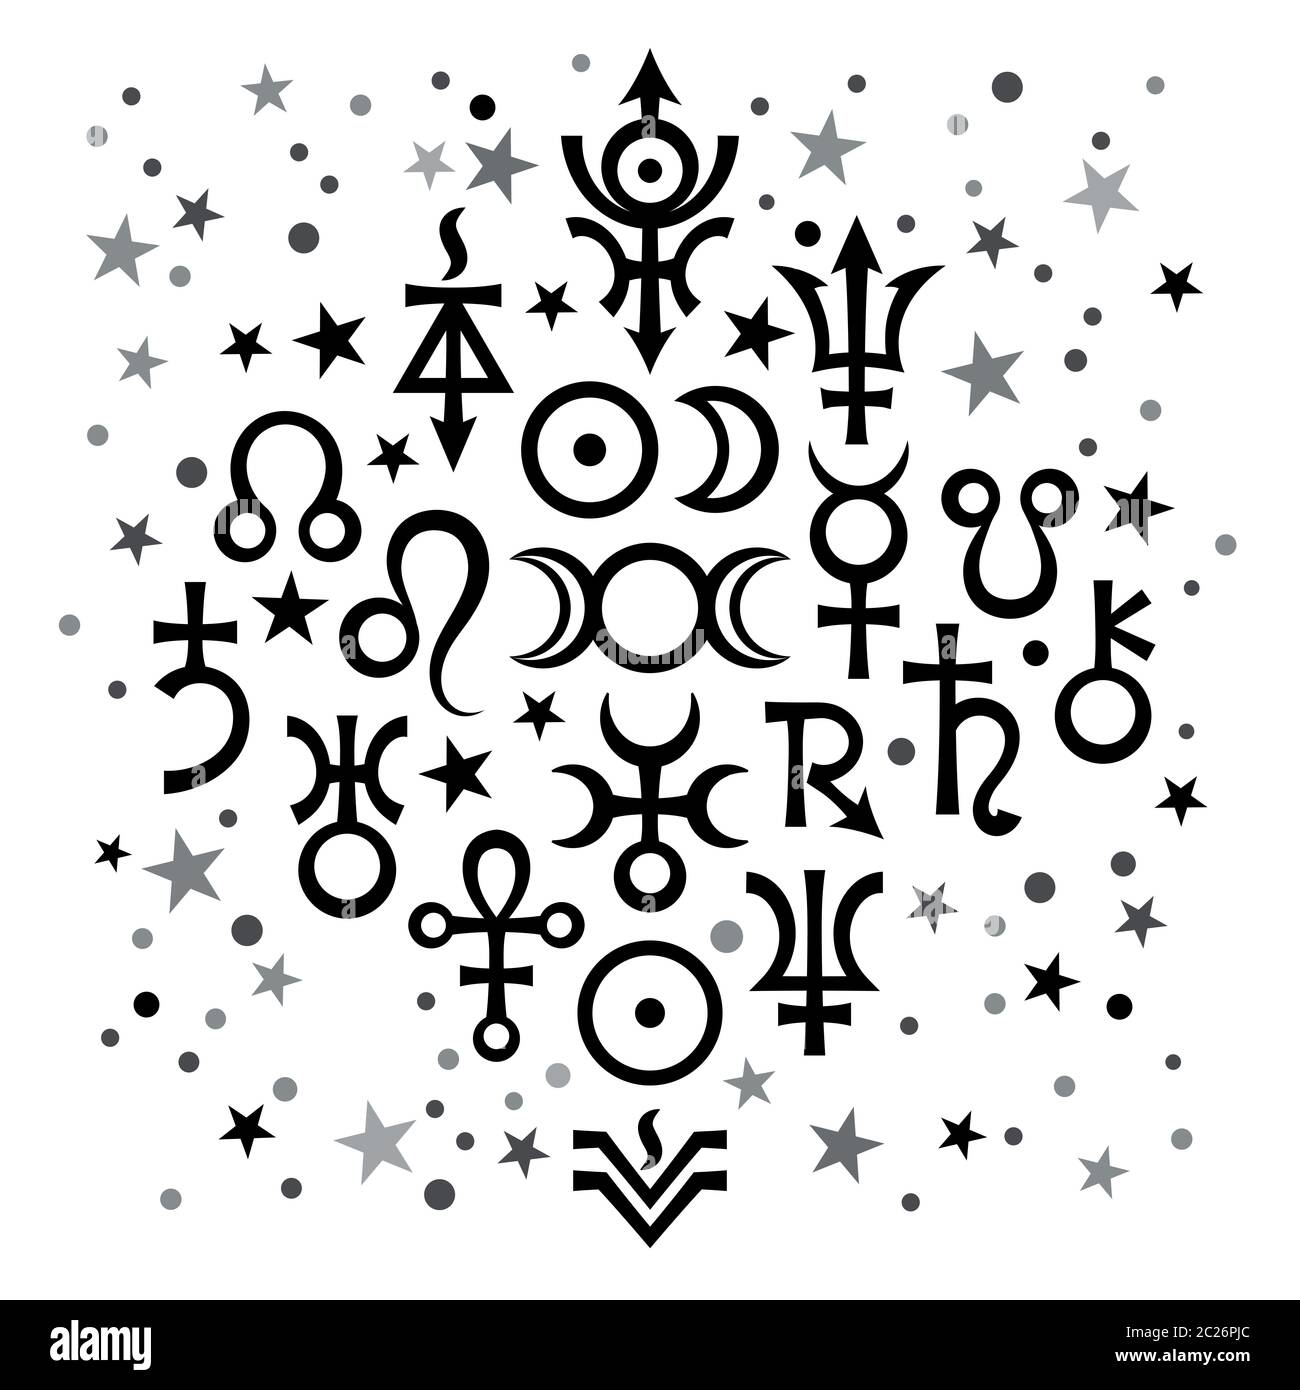 Ensemble astrologique №20 (signes astrologiques et symboles mystiques occultes), fond noir et blanc de modèle céleste avec étoiles Banque D'Images